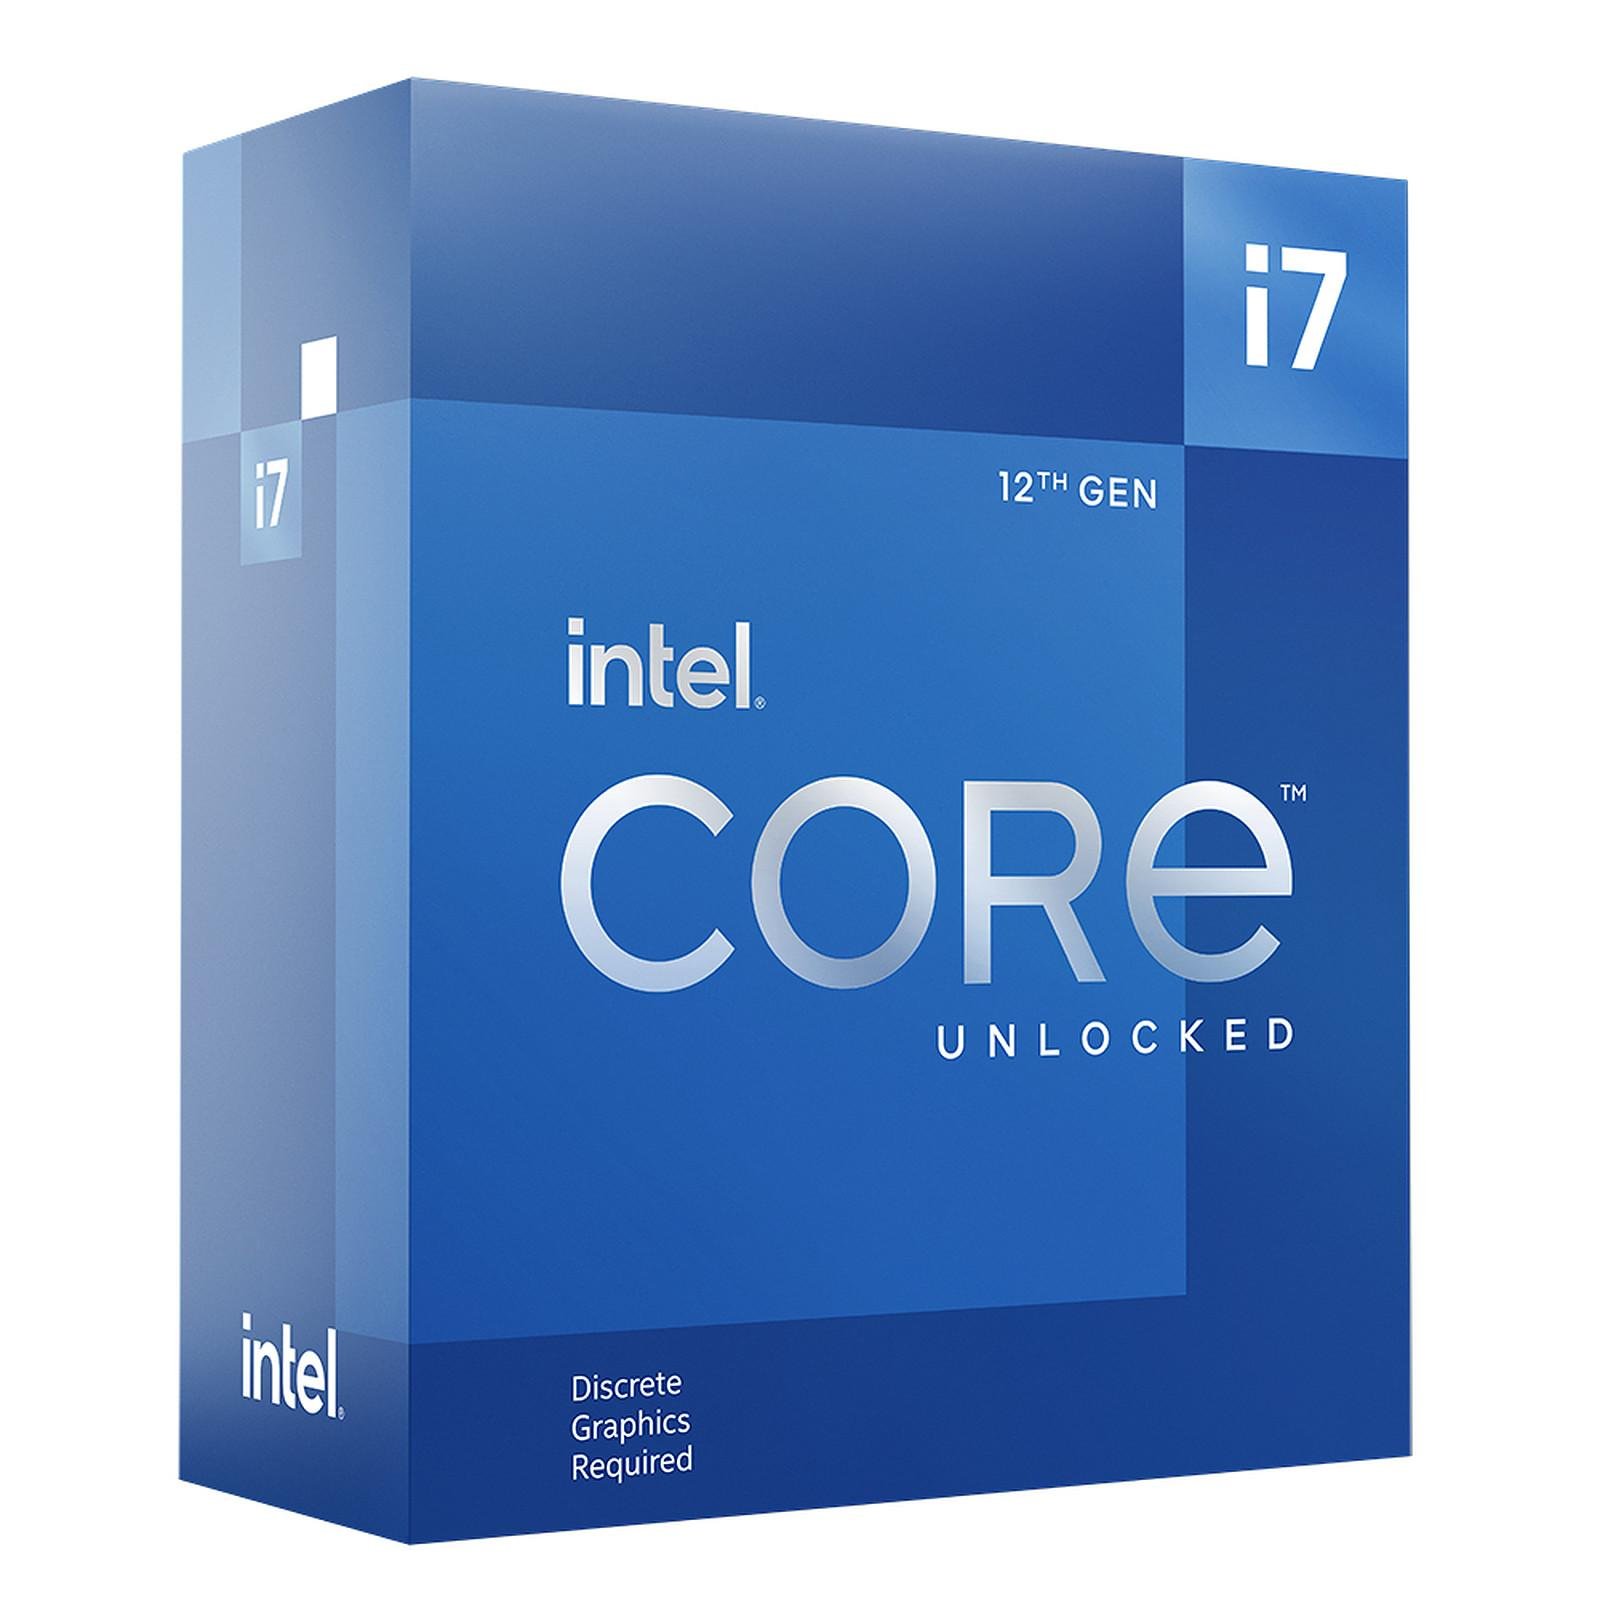 Intel® Core™ i7-12700K - Static